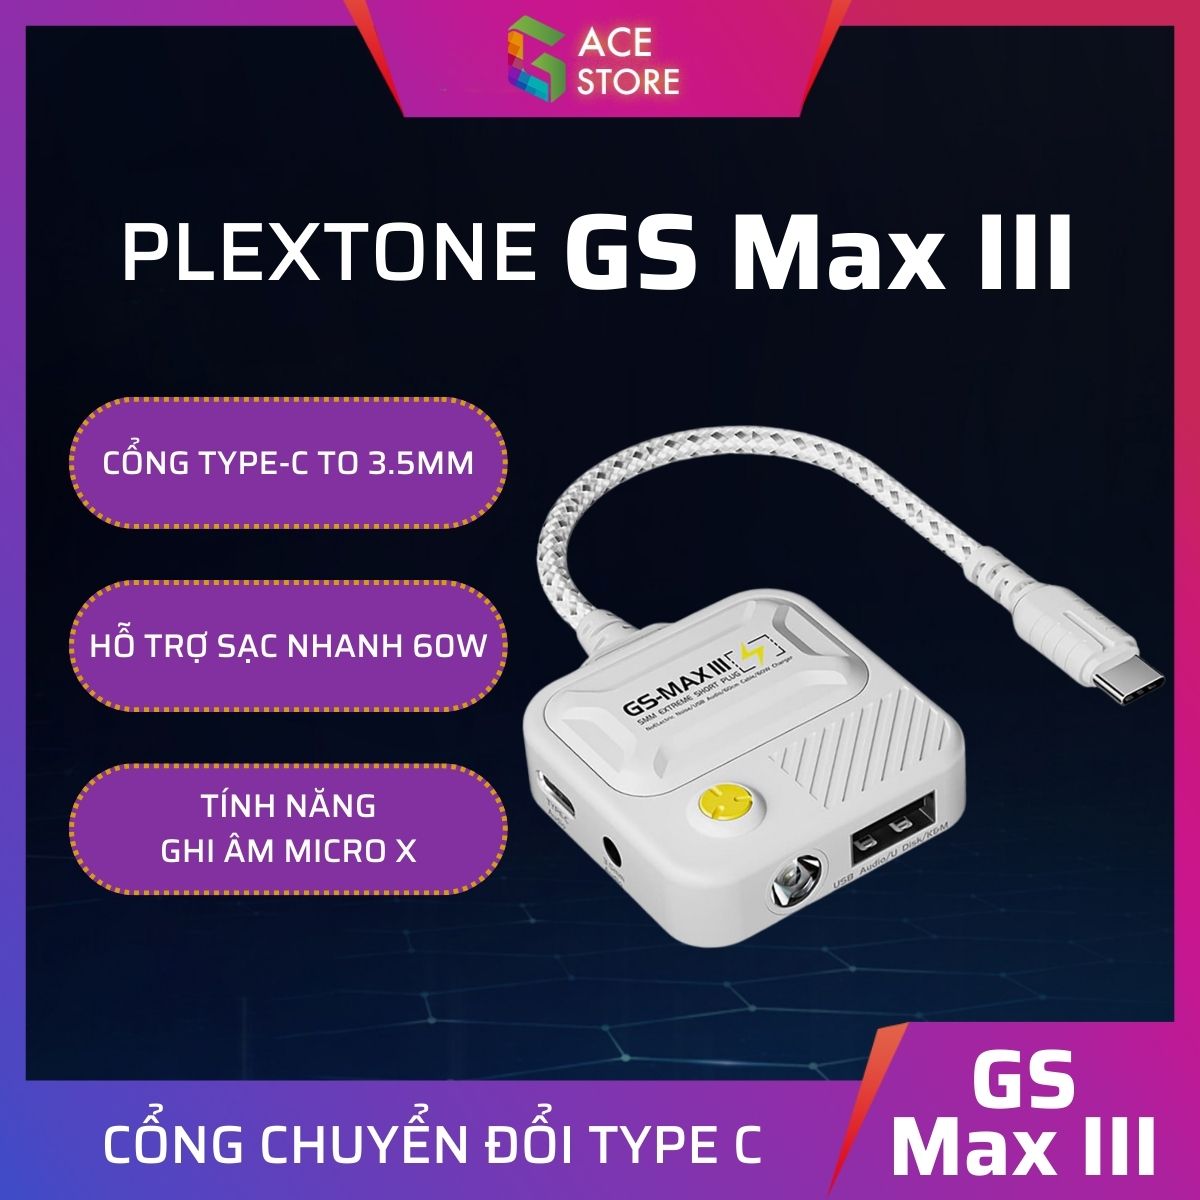 Cáp chuyển đổi Plextone GS Max Pro III 4in1 đầu Type C sang 3.5mm hỗ trợ sạc nhanh 60W